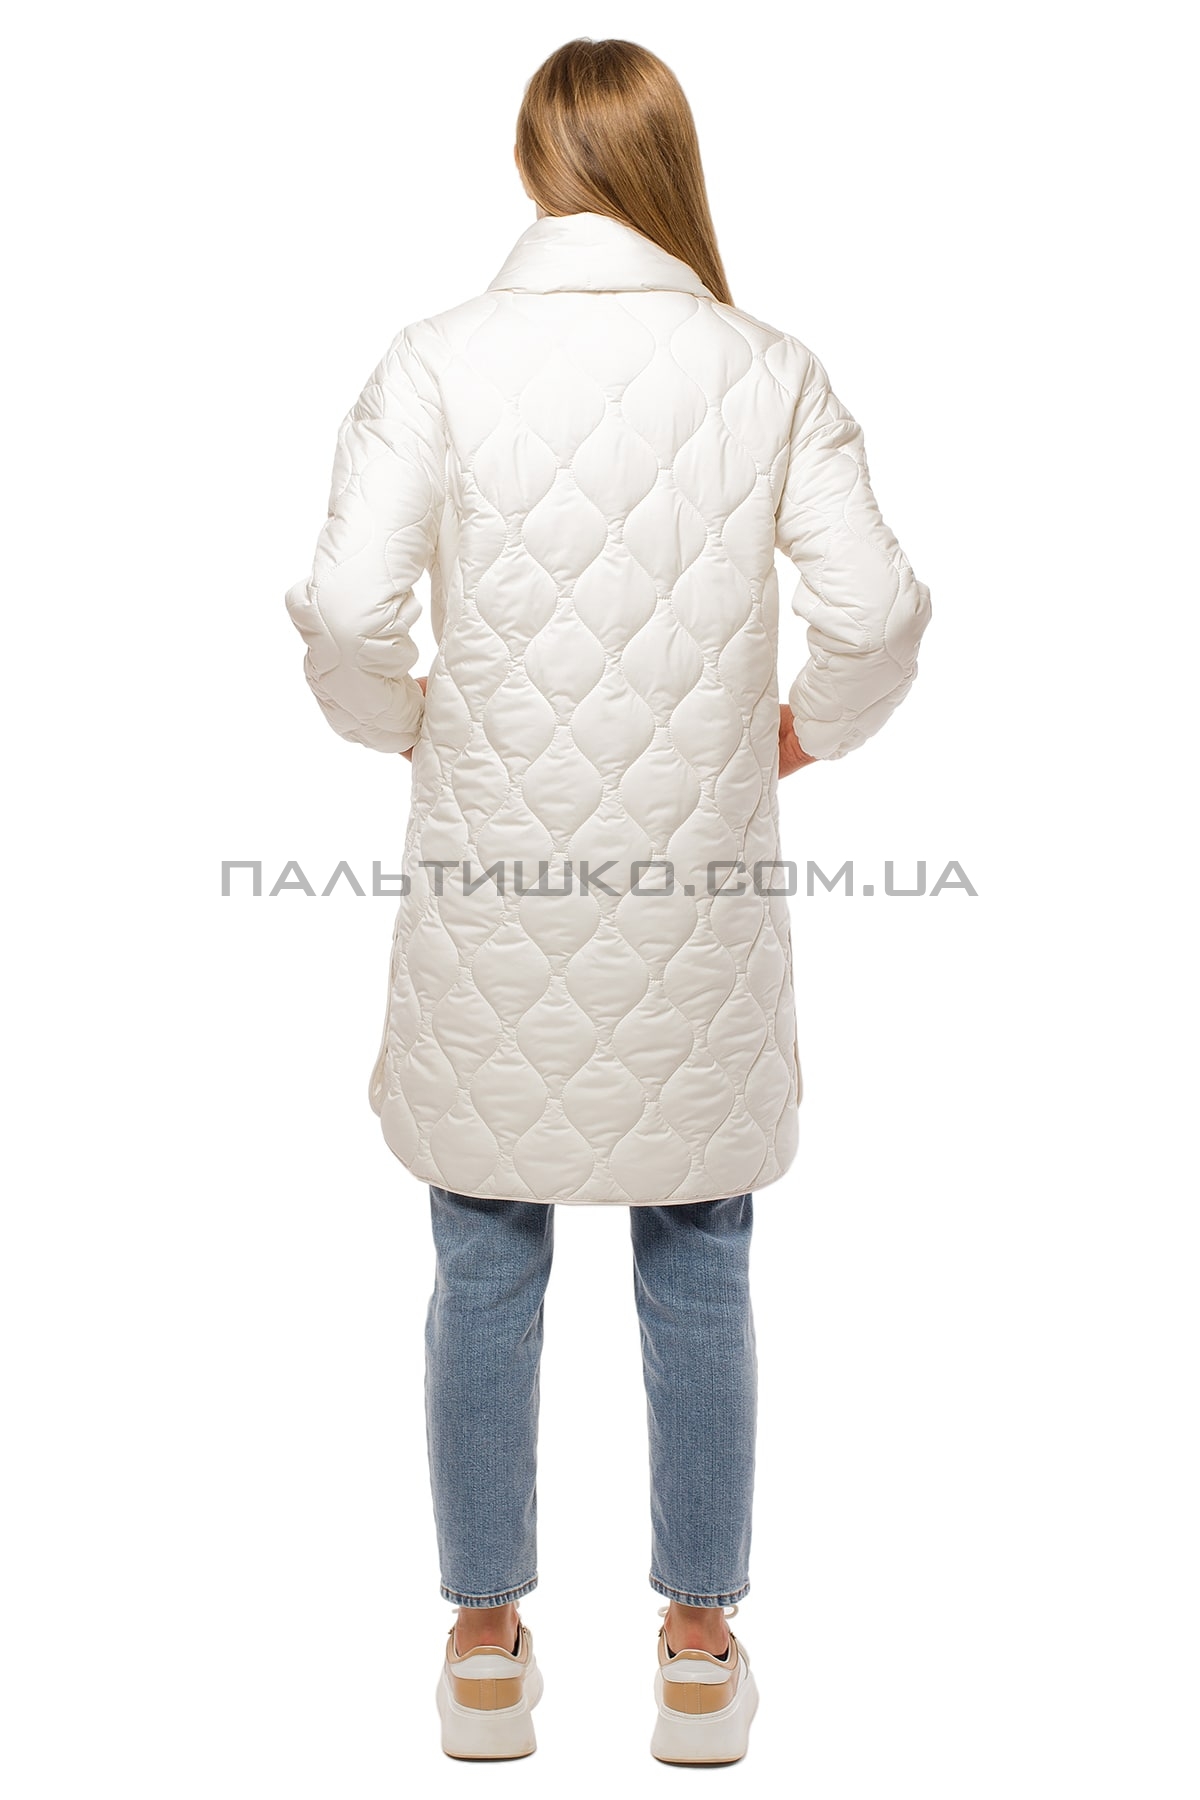  Жіноча зимова куртка біла